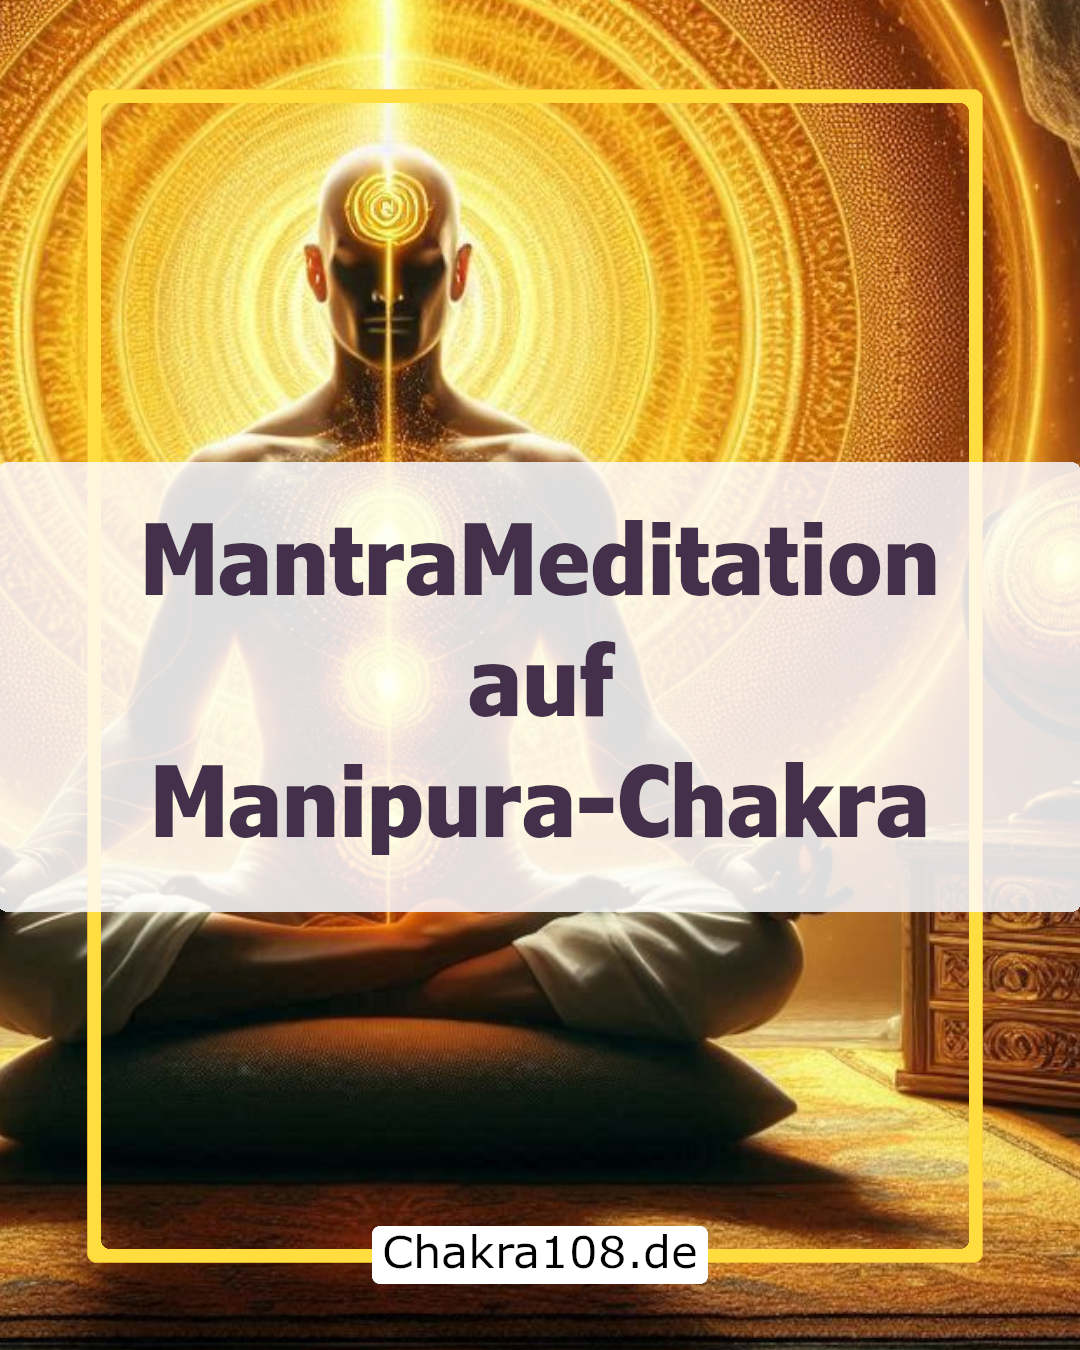 Manipura-Mantra-Meditation auf Manipura-Chakra - Welches Mantra für Solarplexus-Chakra?